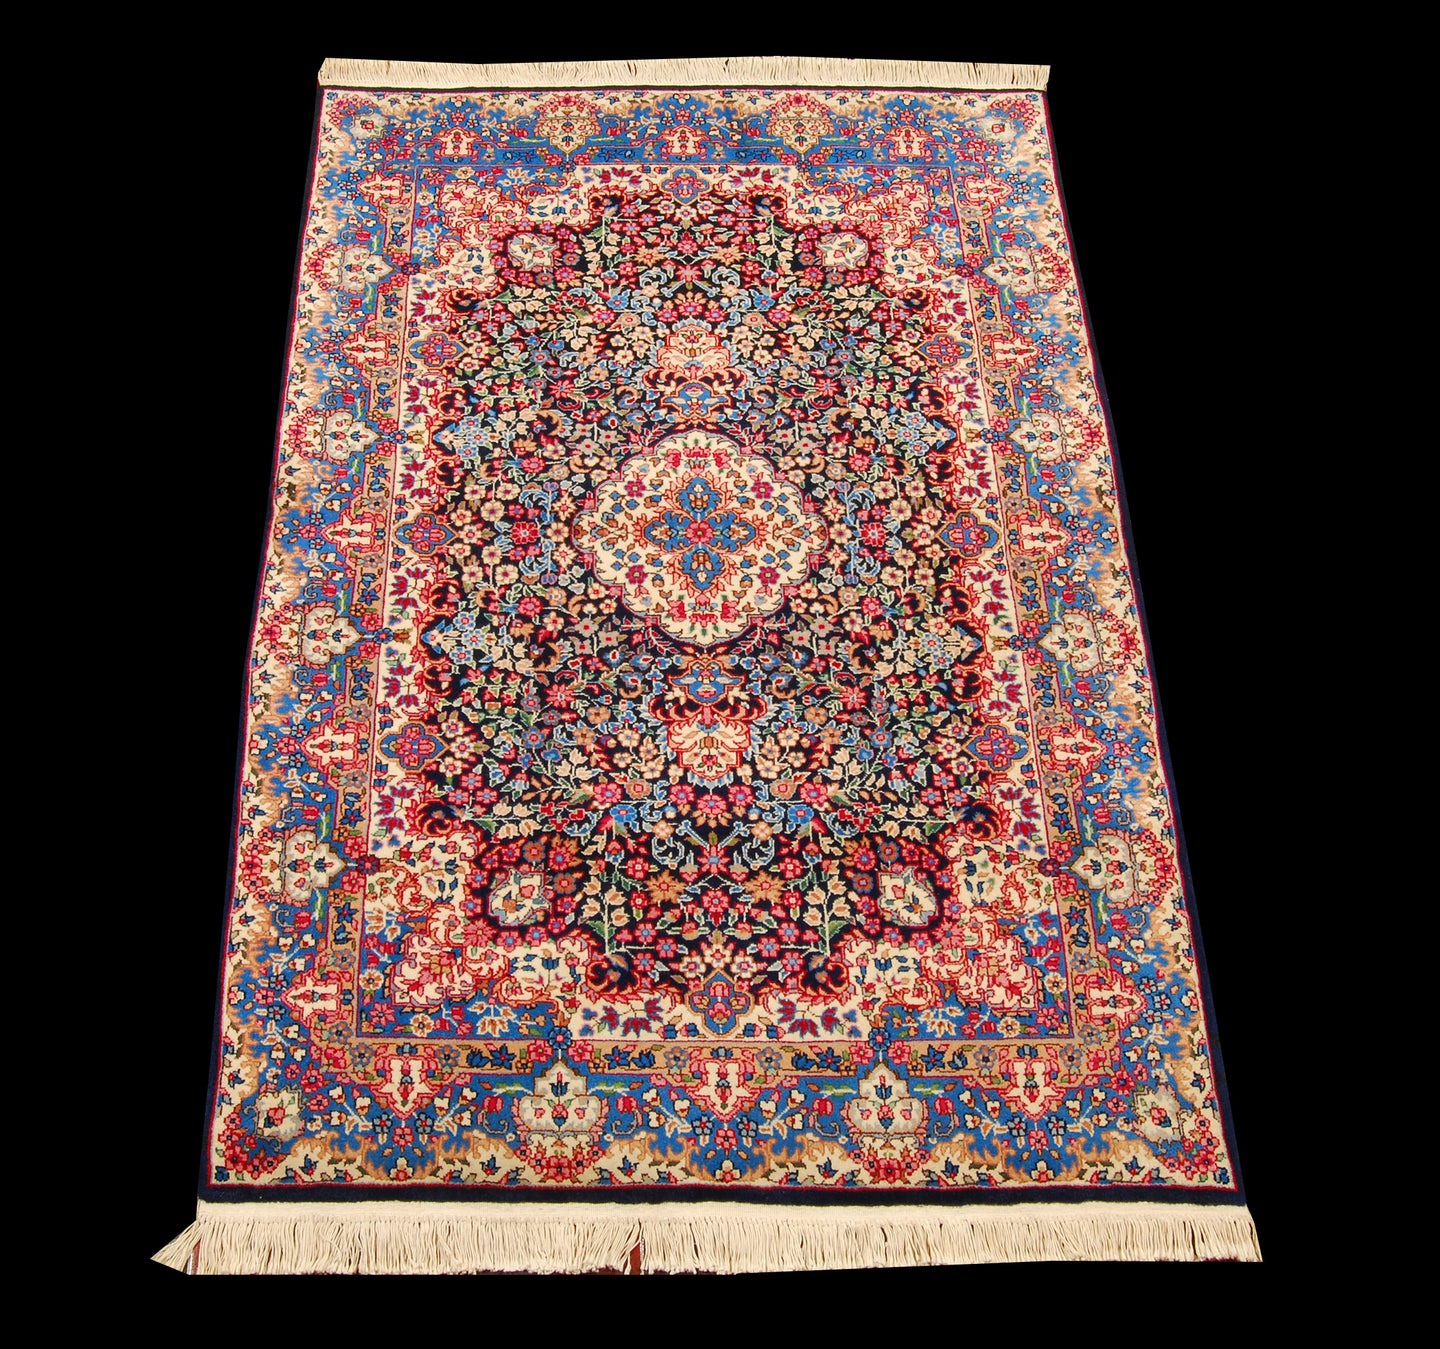 Tappeto Carpet Tapis Teppich Alfombra Rug Berkana (Hand Made) CM 183x122